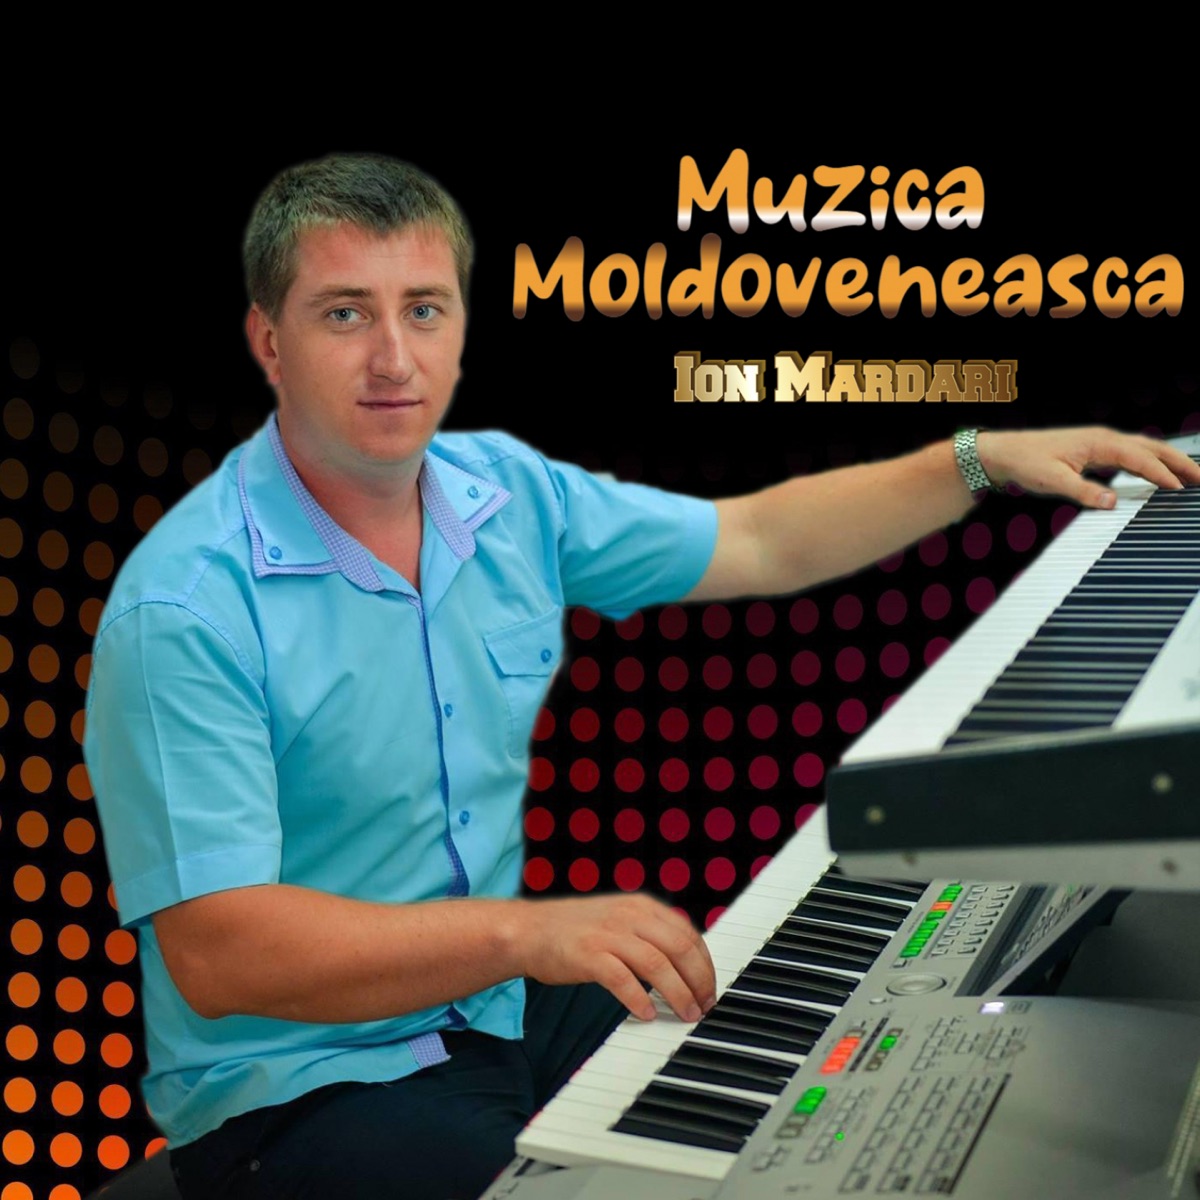 Muzica Moldoveneasca by Ion Mardari on Apple Music